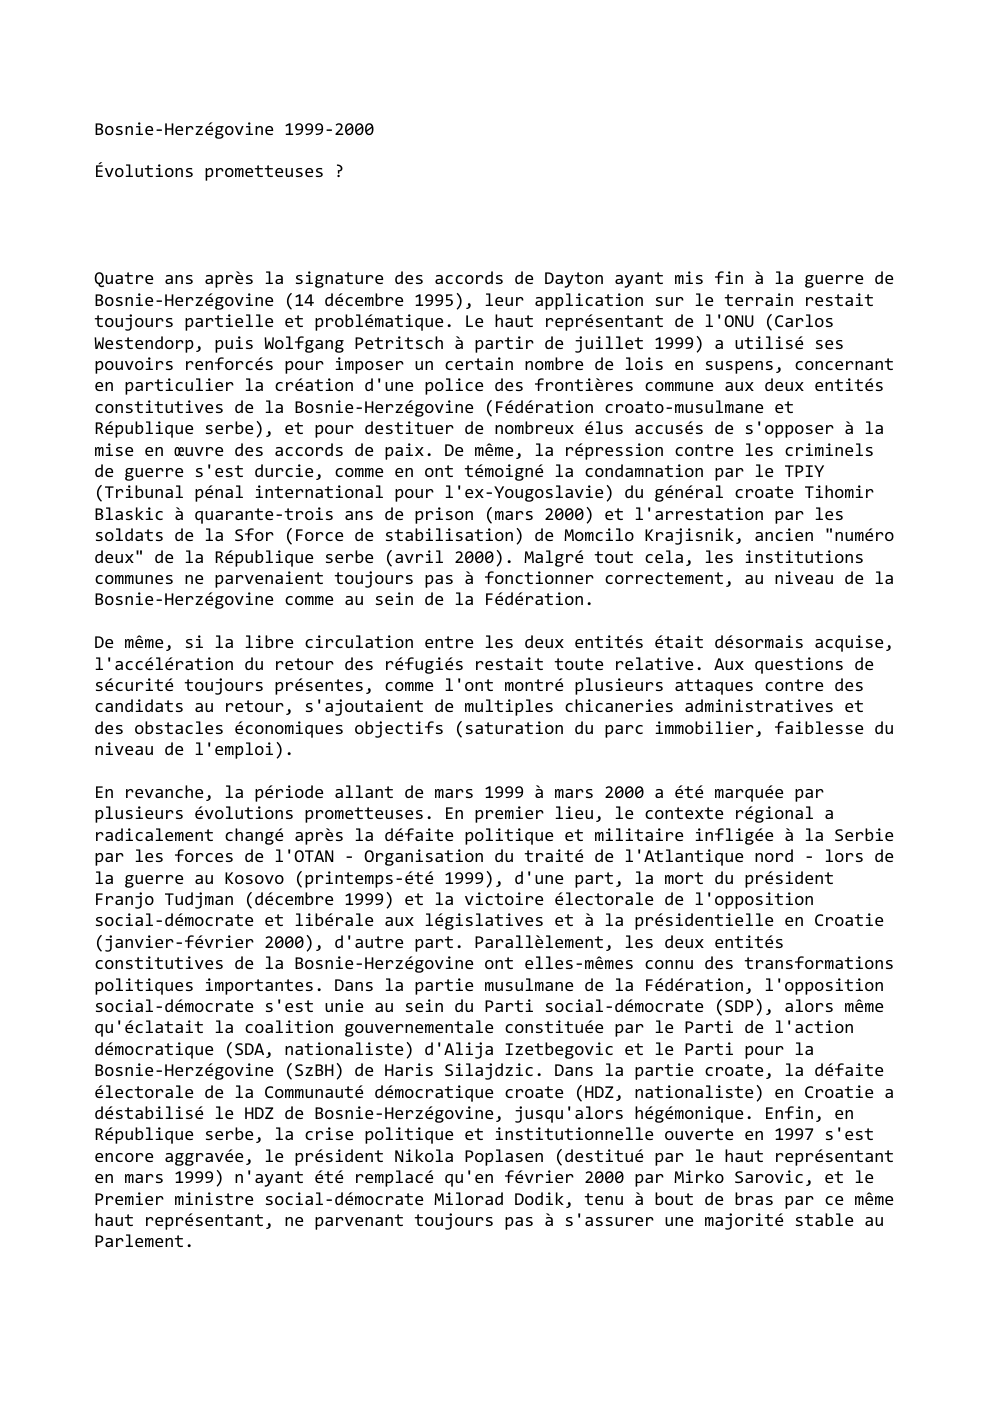 Prévisualisation du document Bosnie-Herzégovine 1999-2000
Évolutions prometteuses ?

Quatre ans après la signature des accords de Dayton ayant mis fin à la guerre...